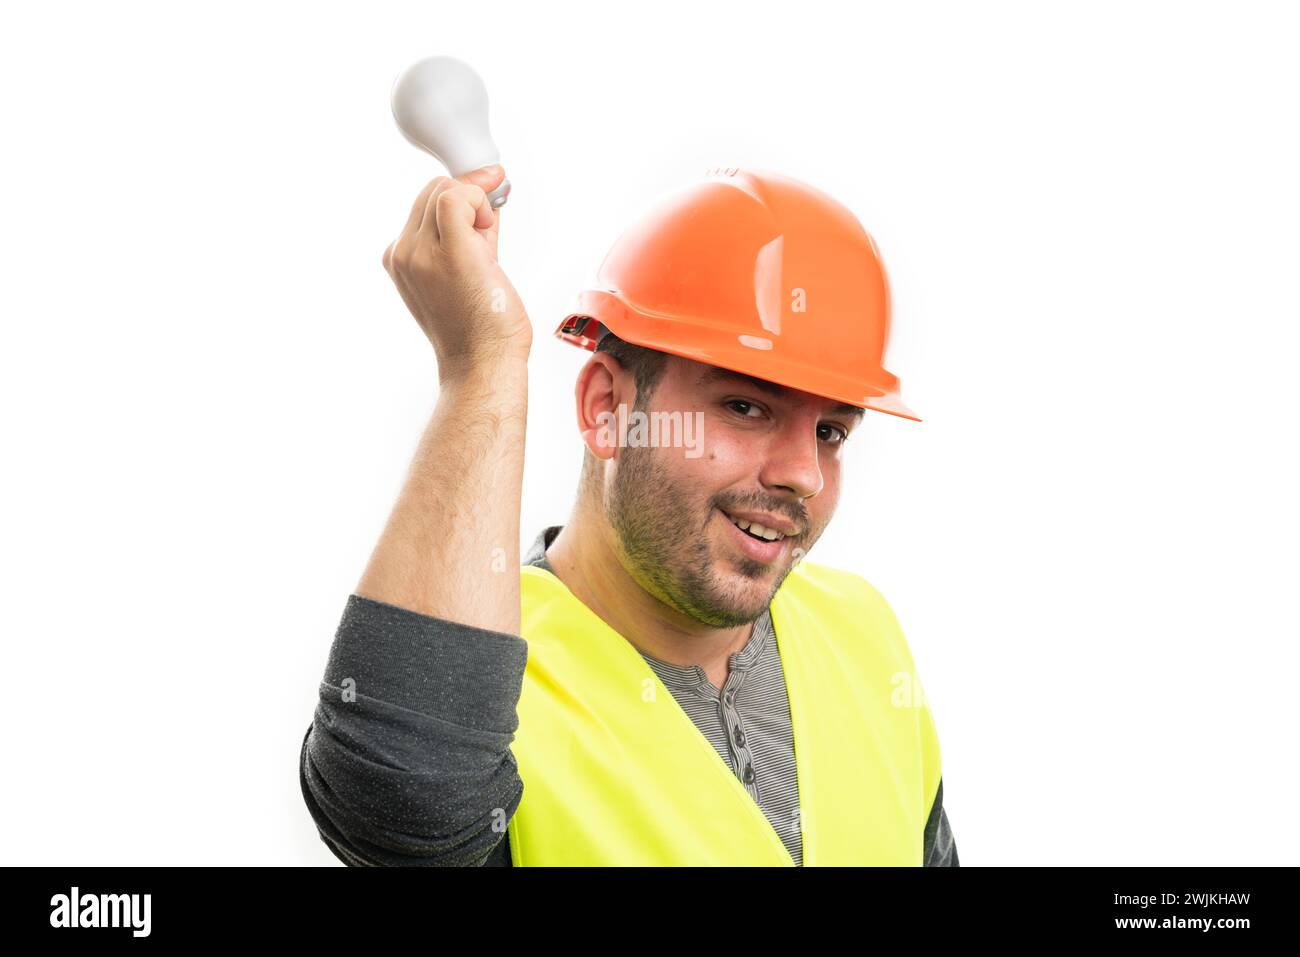 Fröhlicher erwachsener Baumeister-Mann, der Arbeitsausrüstung trägt orangefarbener Helm und gelbe Weste, die Glühbirne über dem Kopf hält, als gute helle Idee Konzept isoliert auf W Stockfoto